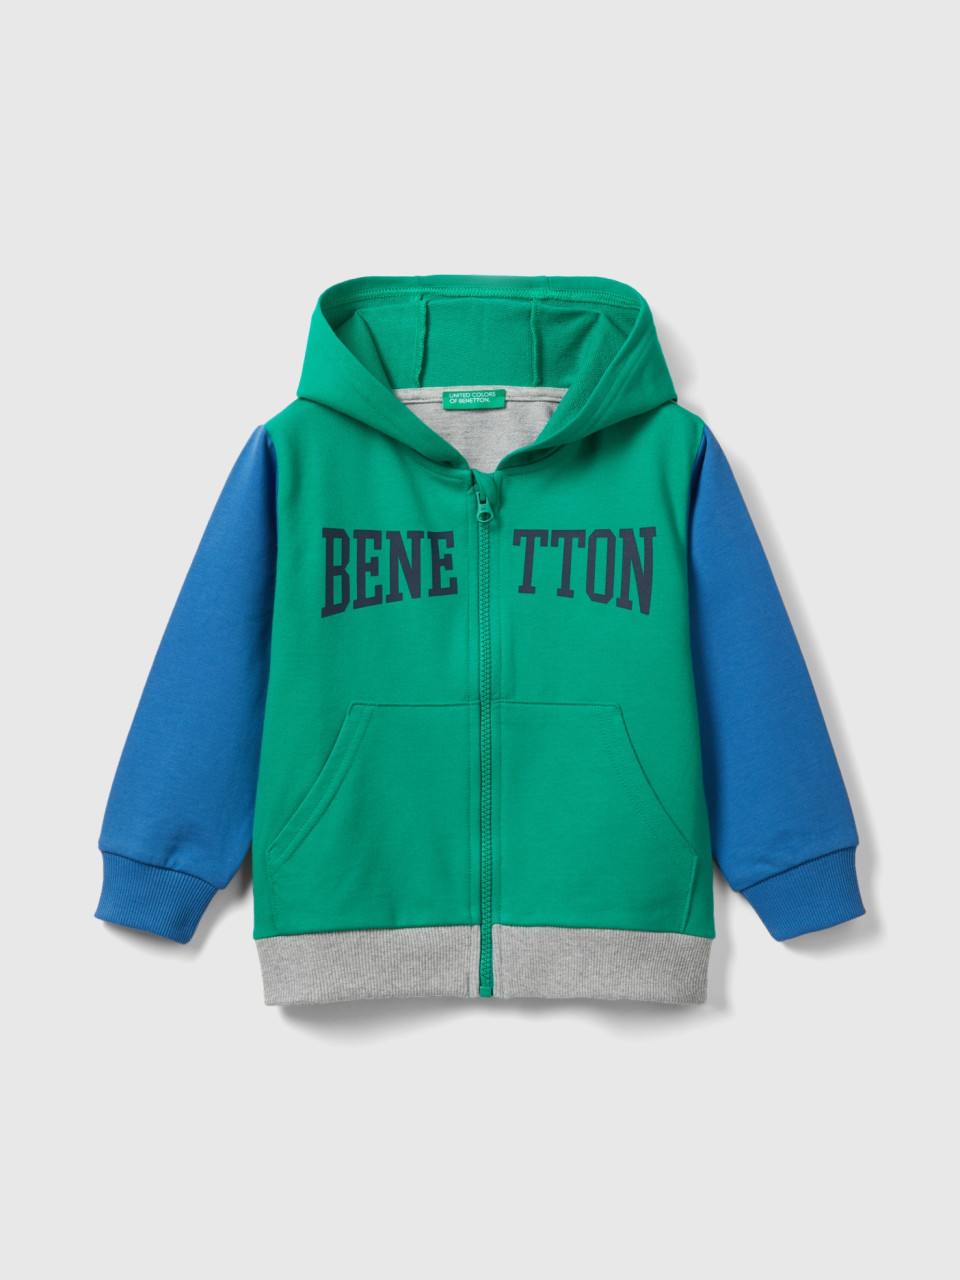 Benetton, Lightweight Sweatshirt With Zip, Multi-color, Kids